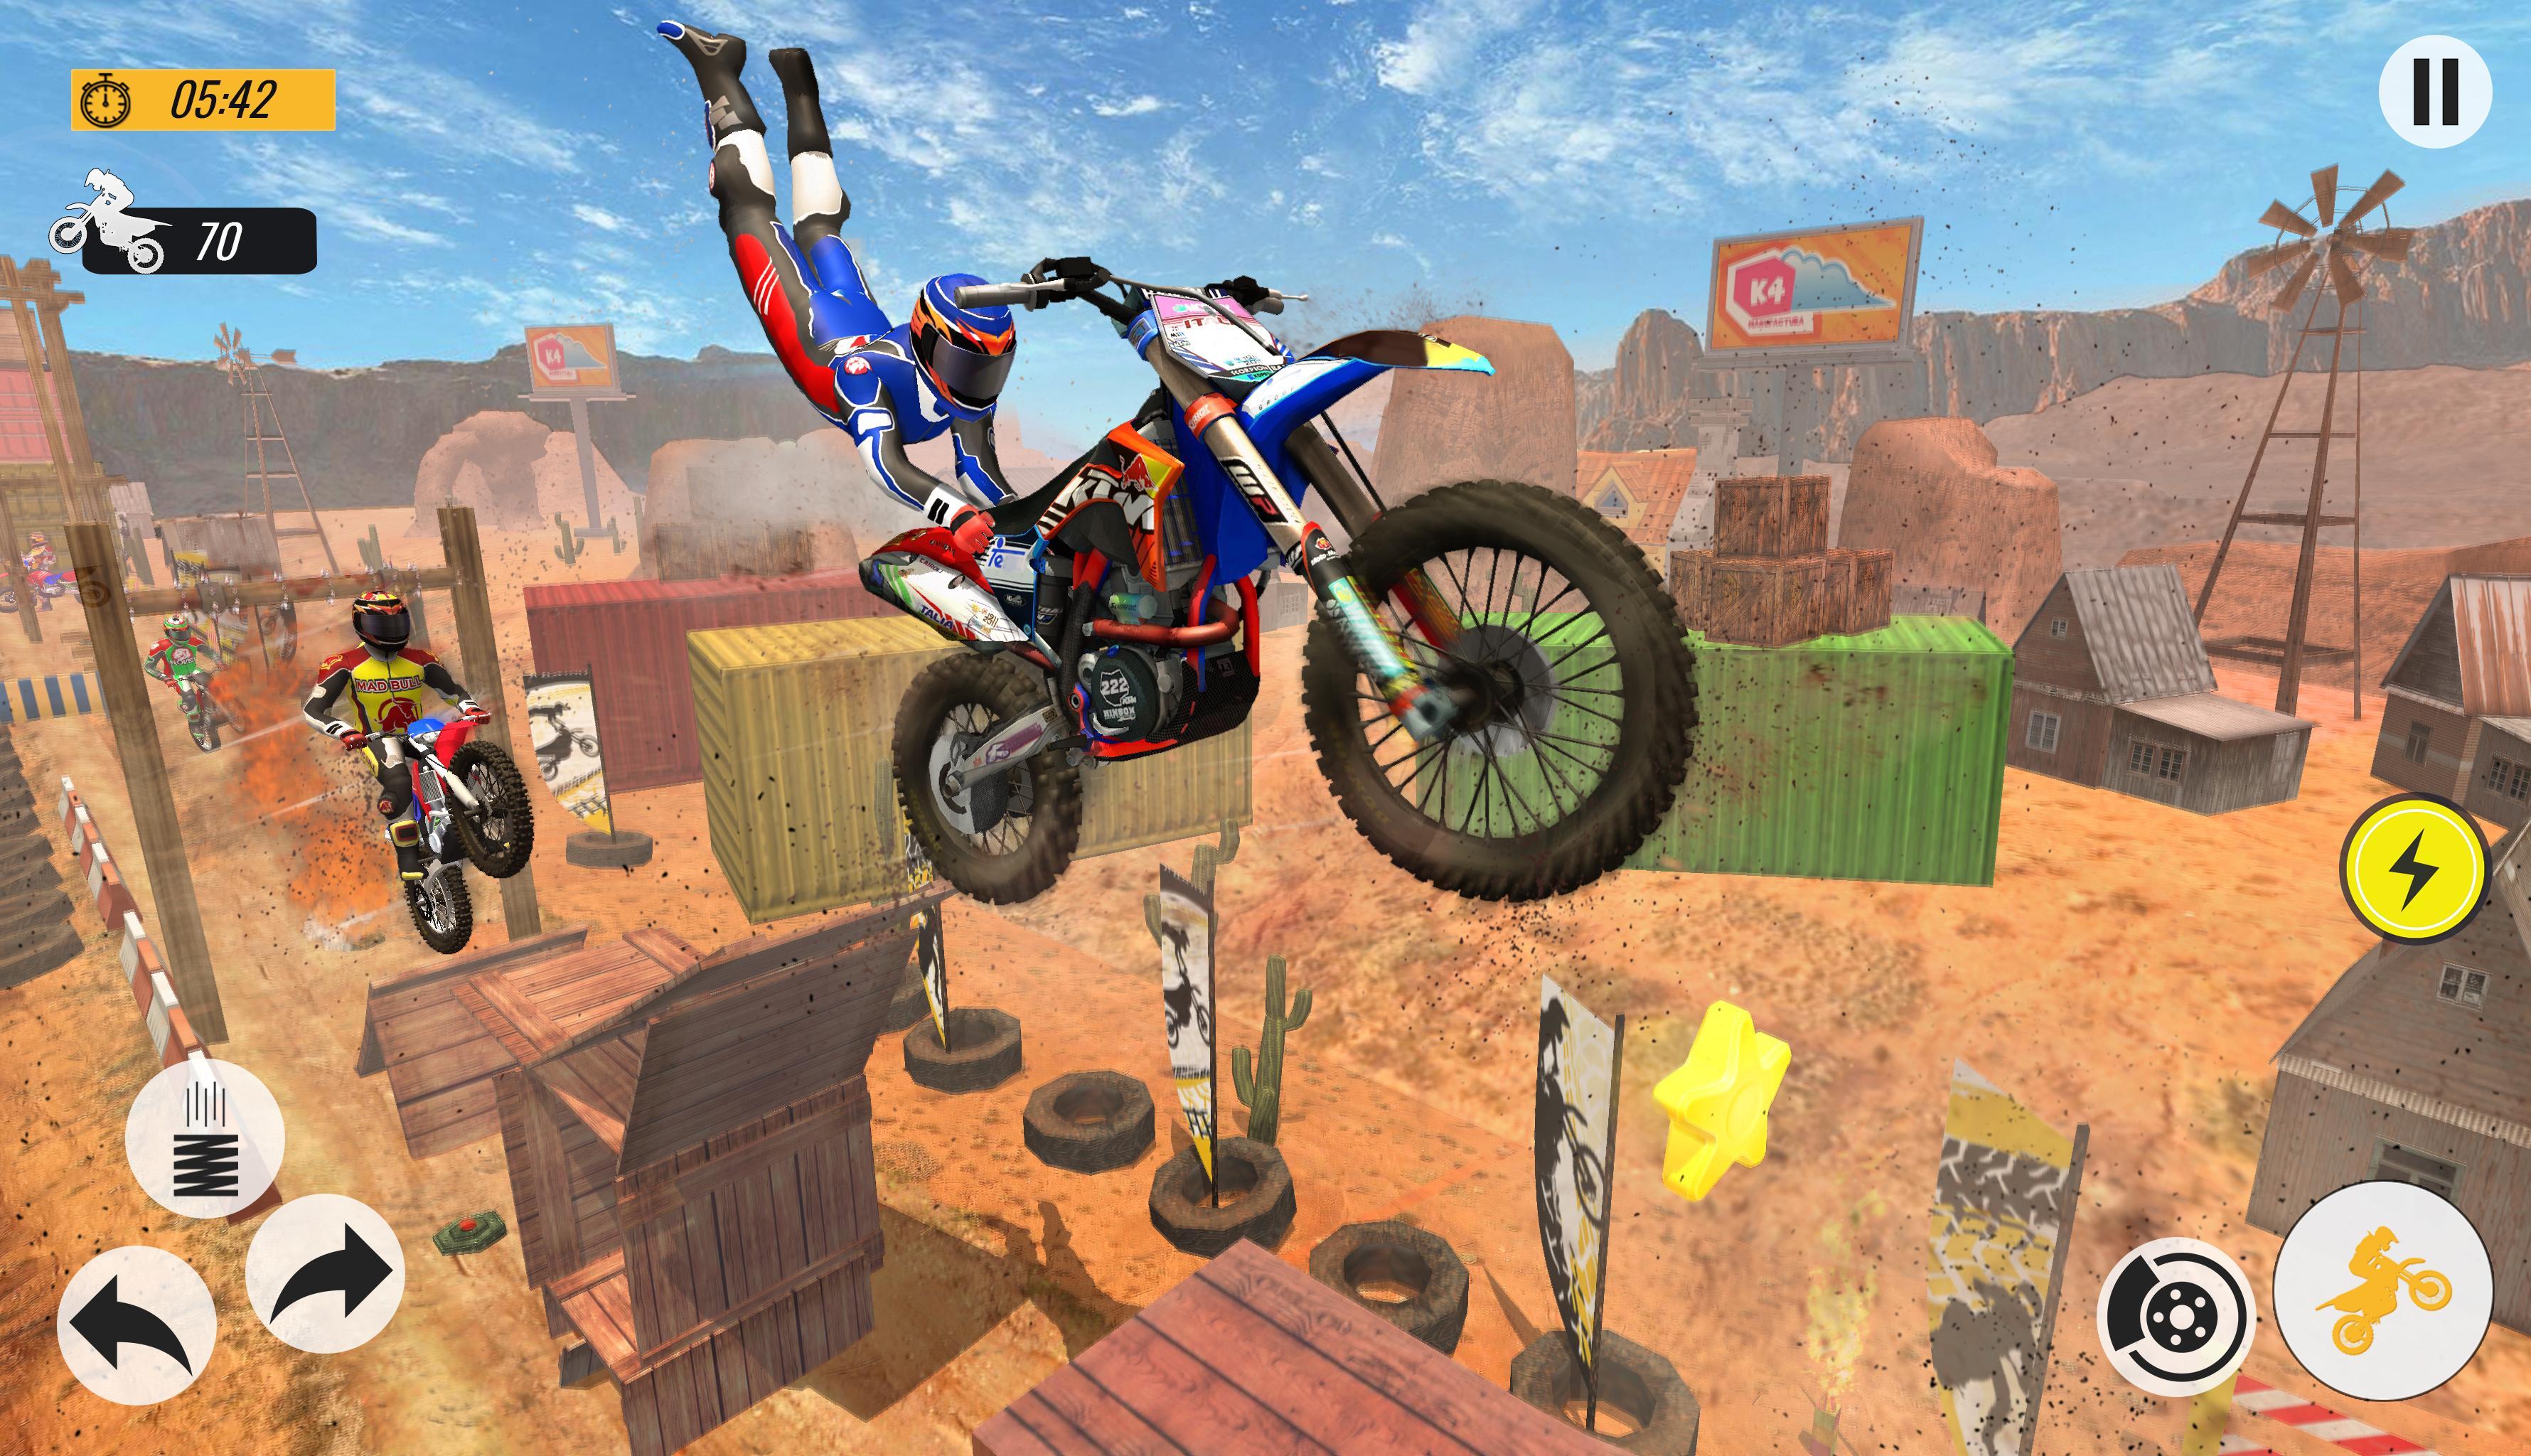 Bike Stunts 3D Racing Stunts Game Free Bike Games 11.9 Screenshot 3